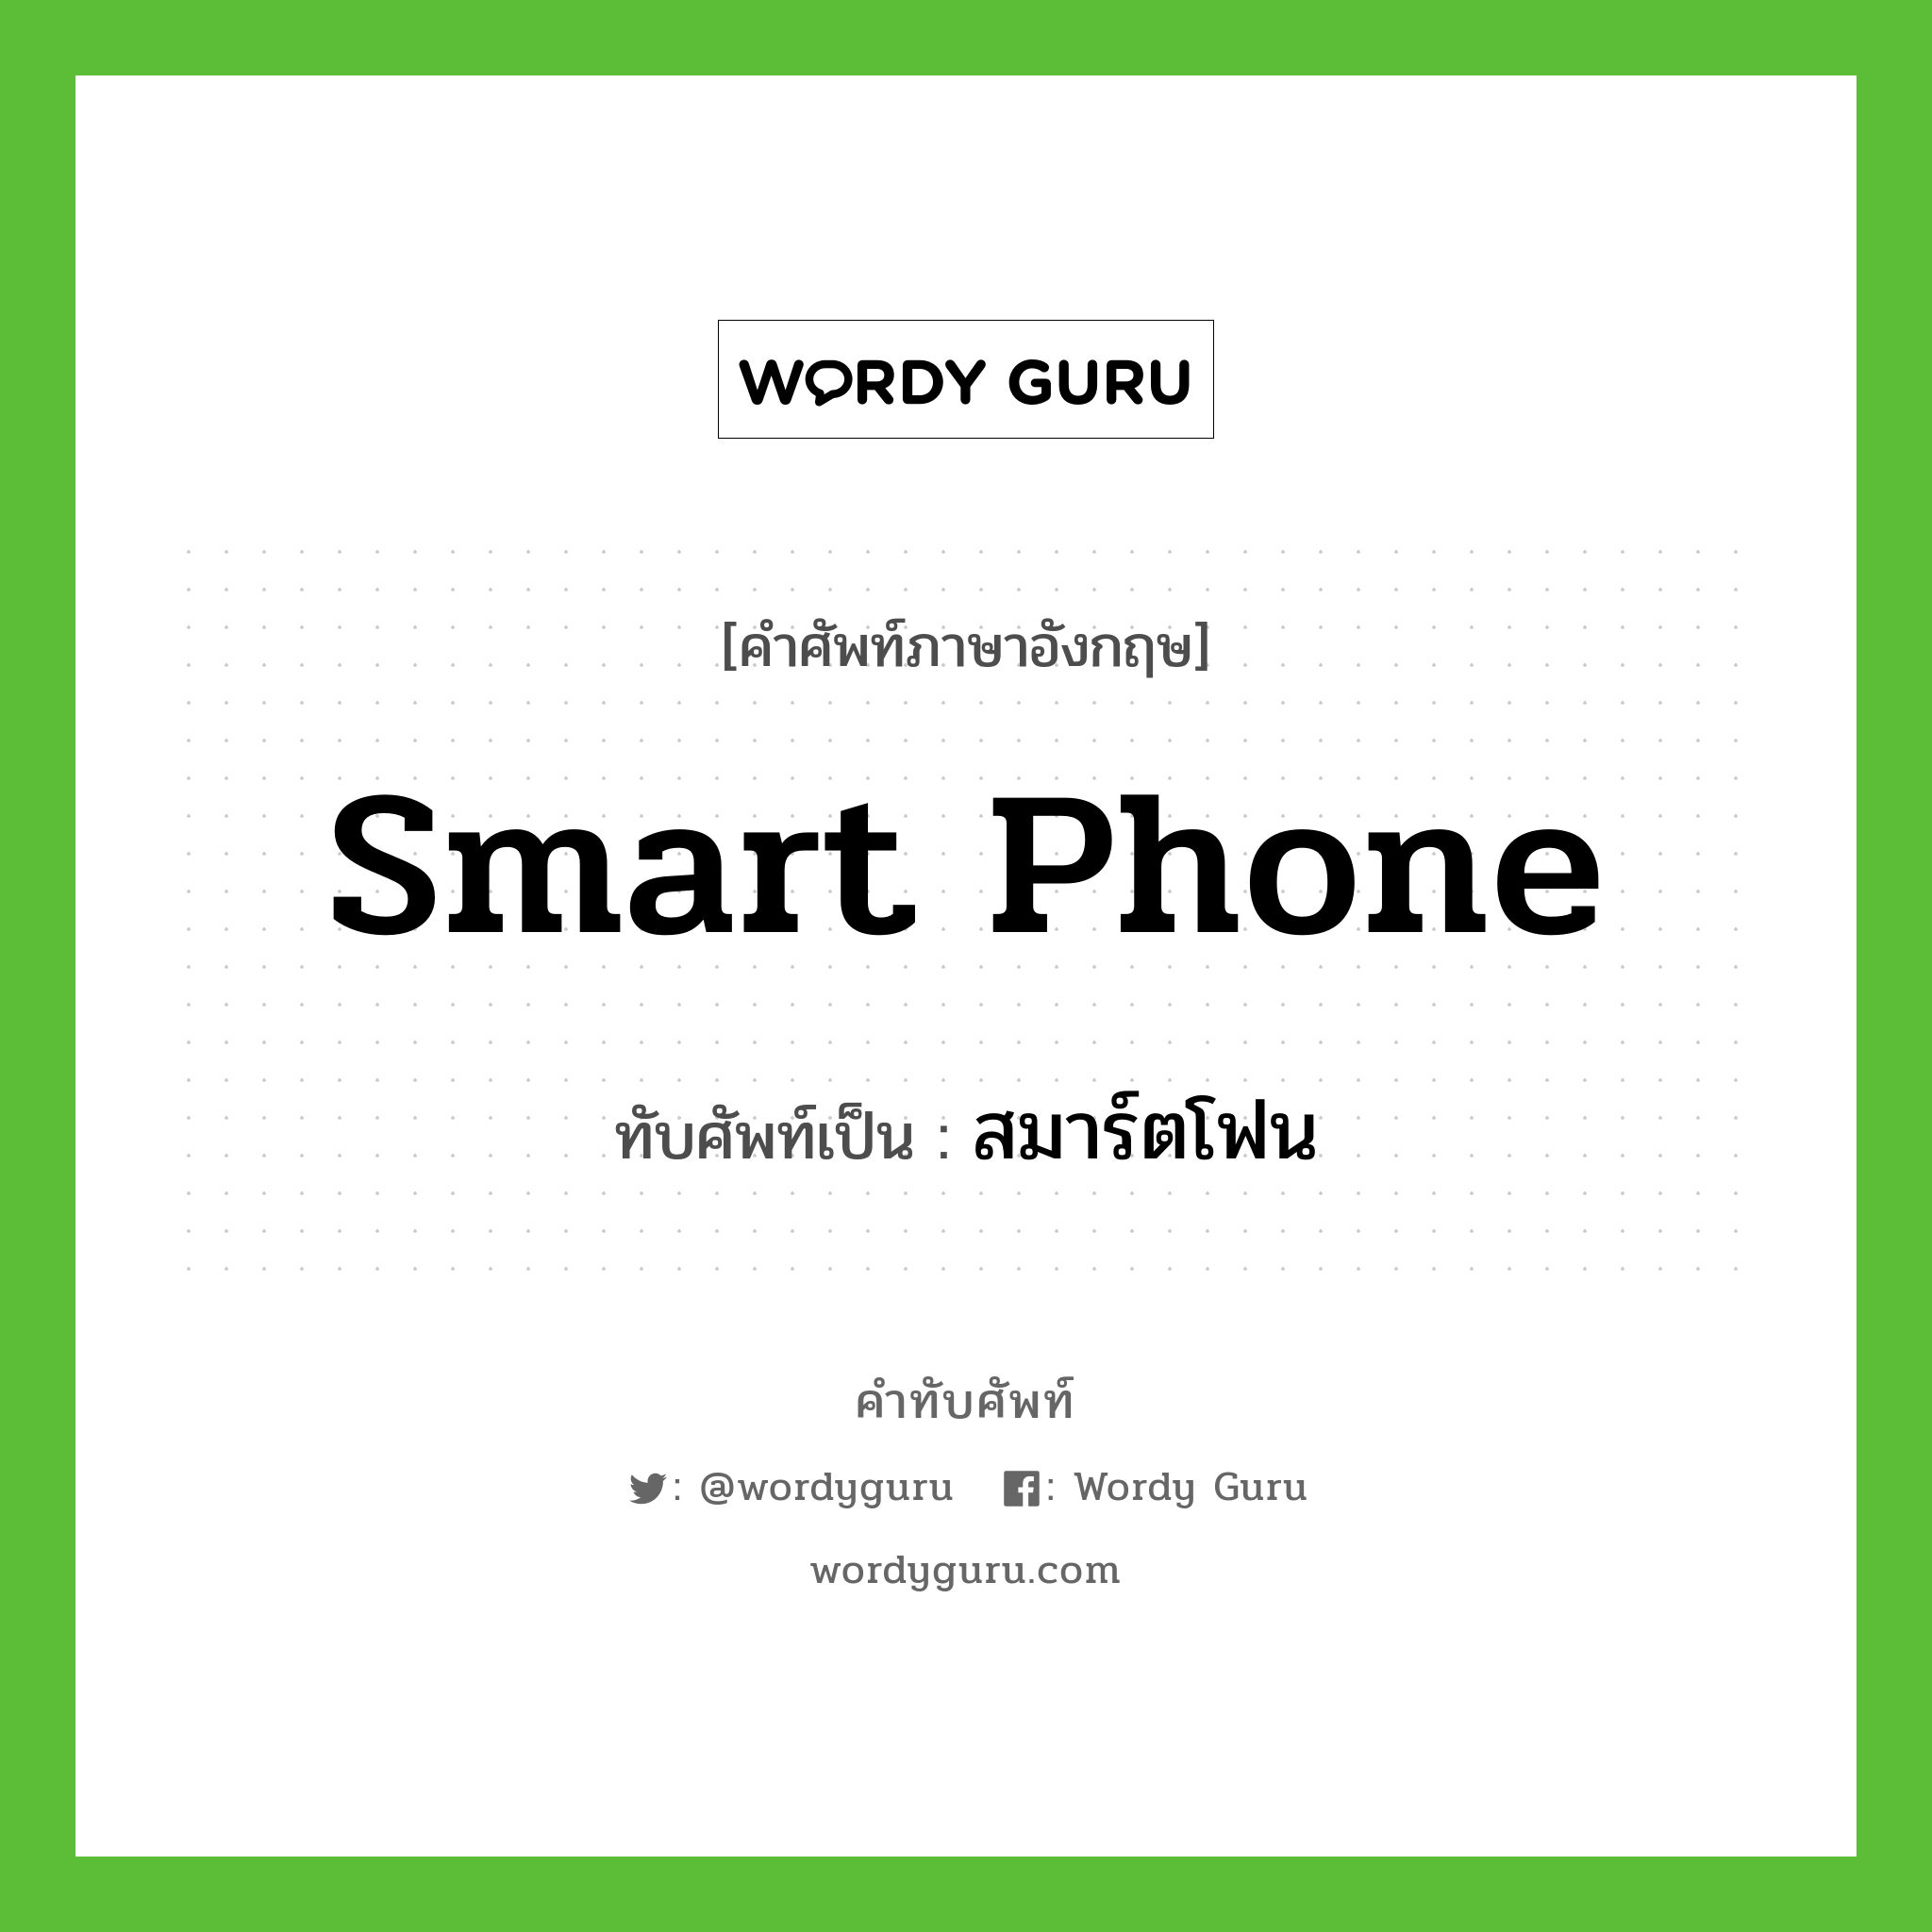 smart phone เขียนเป็นคำไทยว่าอะไร?, คำศัพท์ภาษาอังกฤษ smart phone ทับศัพท์เป็น สมาร์ตโฟน